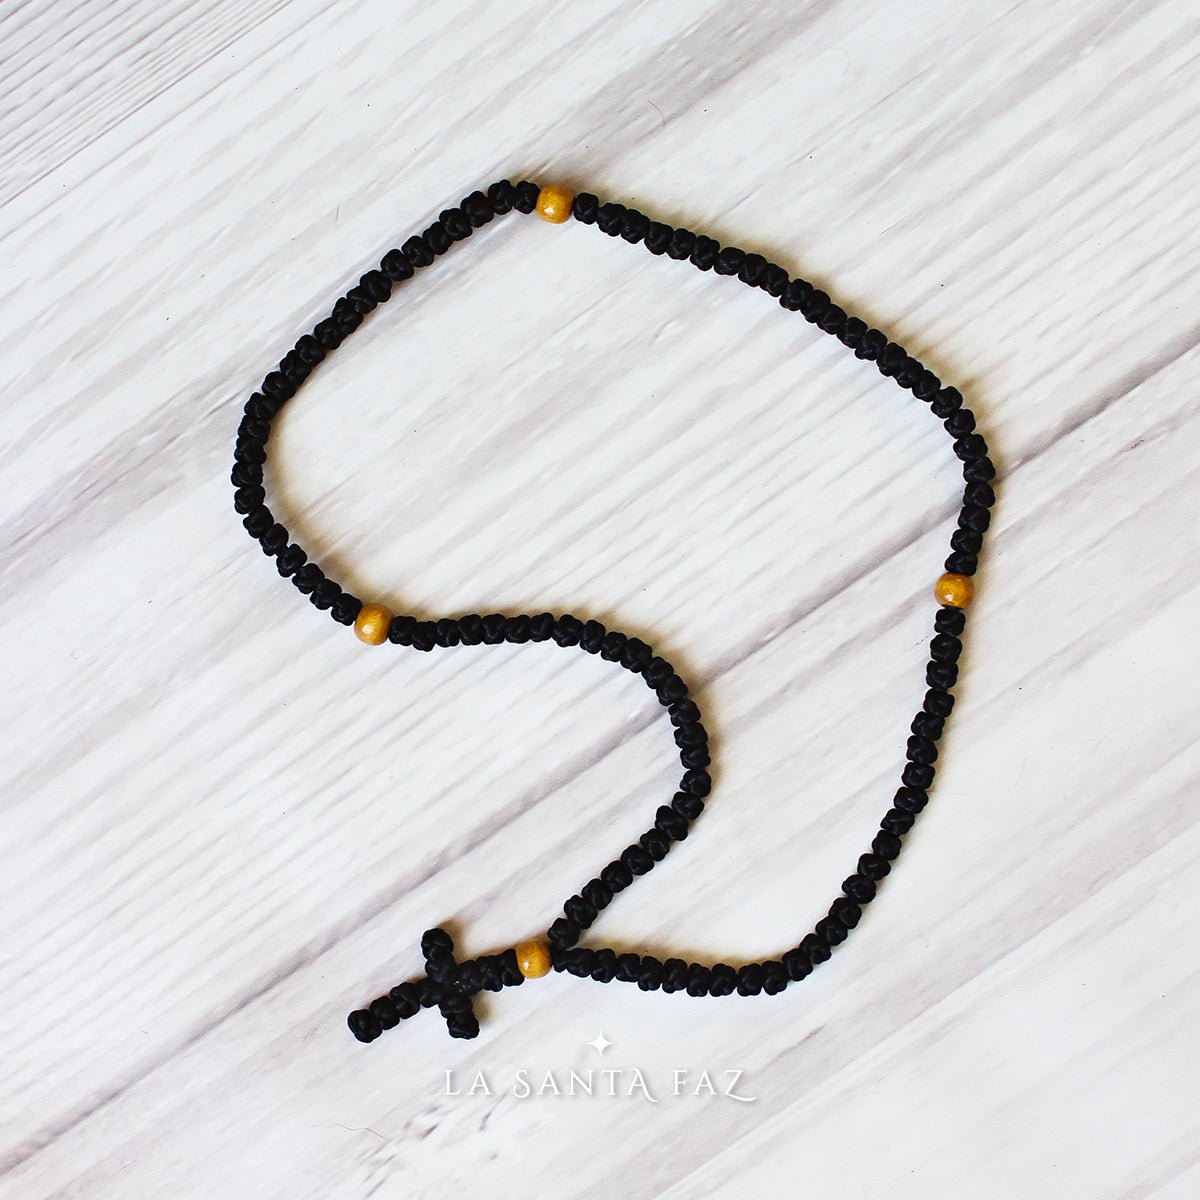 Chotki | Komboskini de 100 nudos (rosario ortodoxo, cordón de oración)